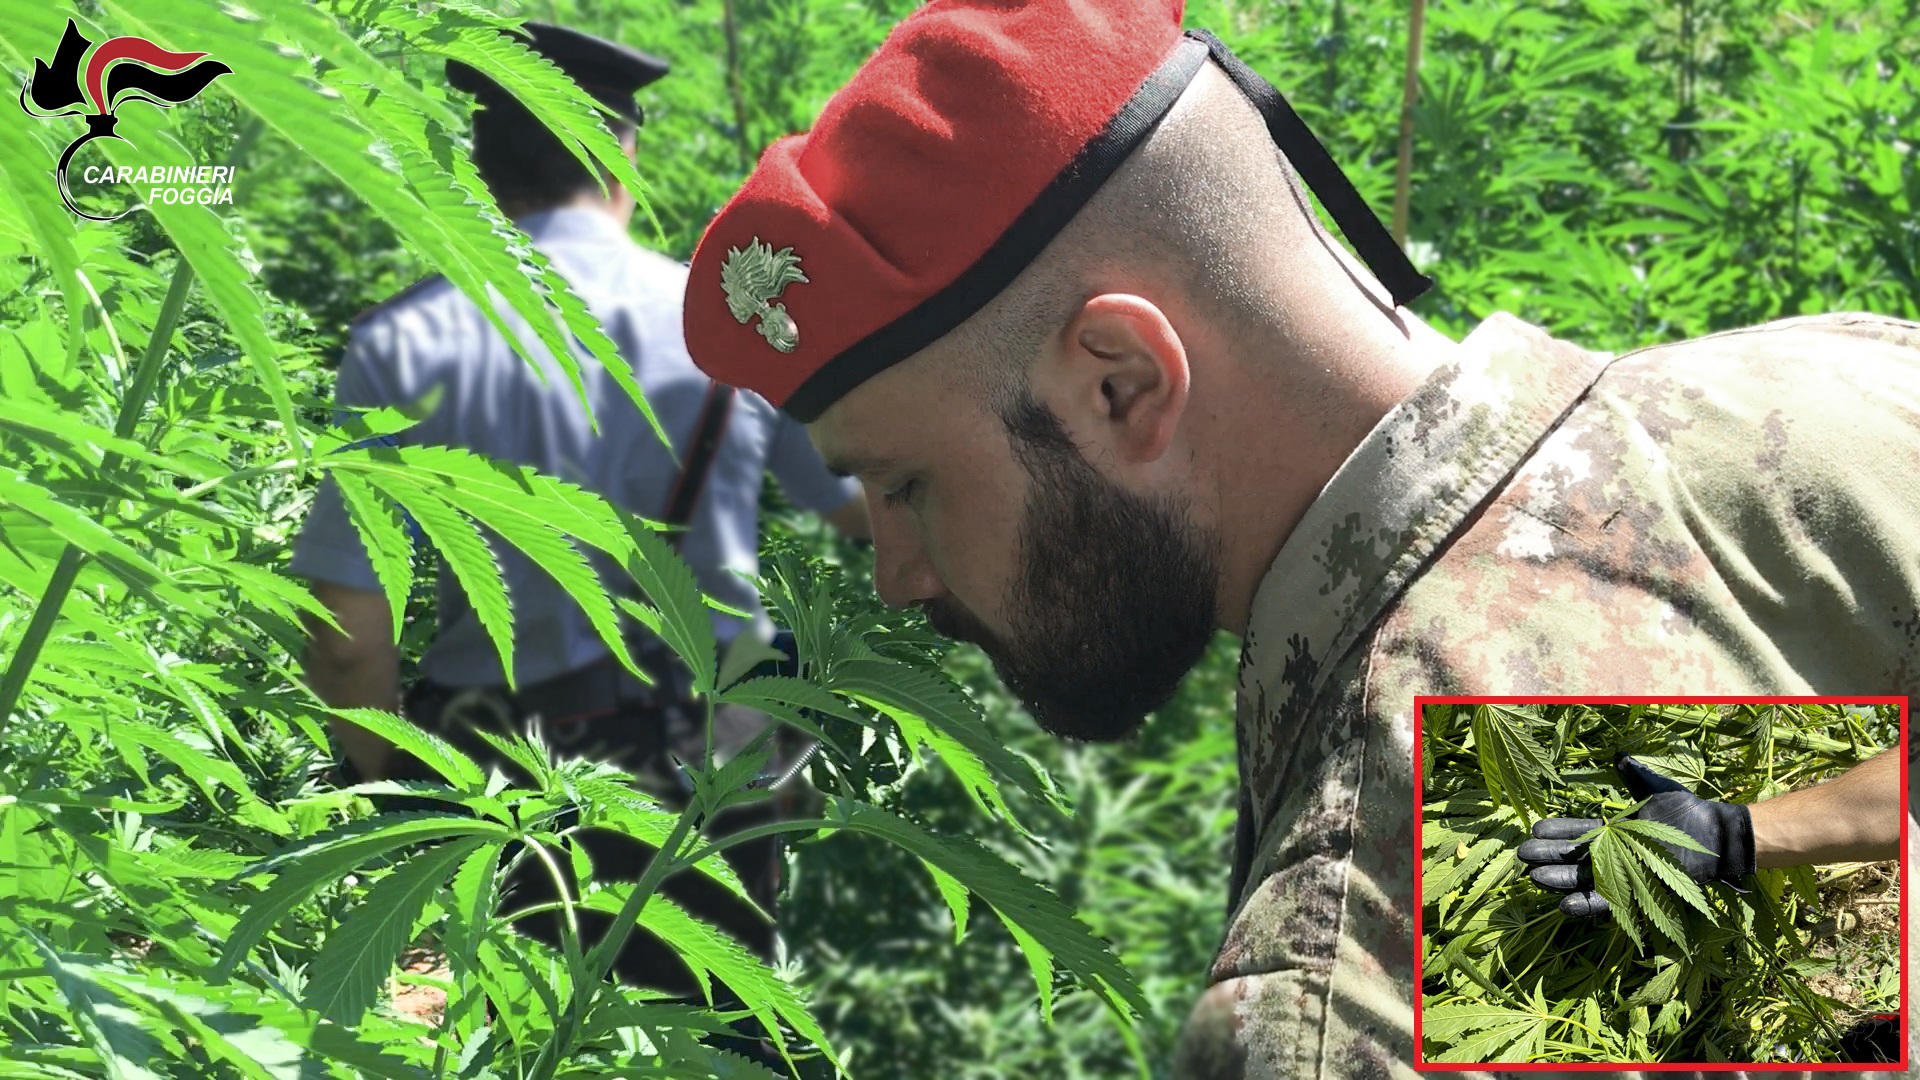 Scoperta un’altra piantagione di marijuana nella zona di Cagnano Varano.